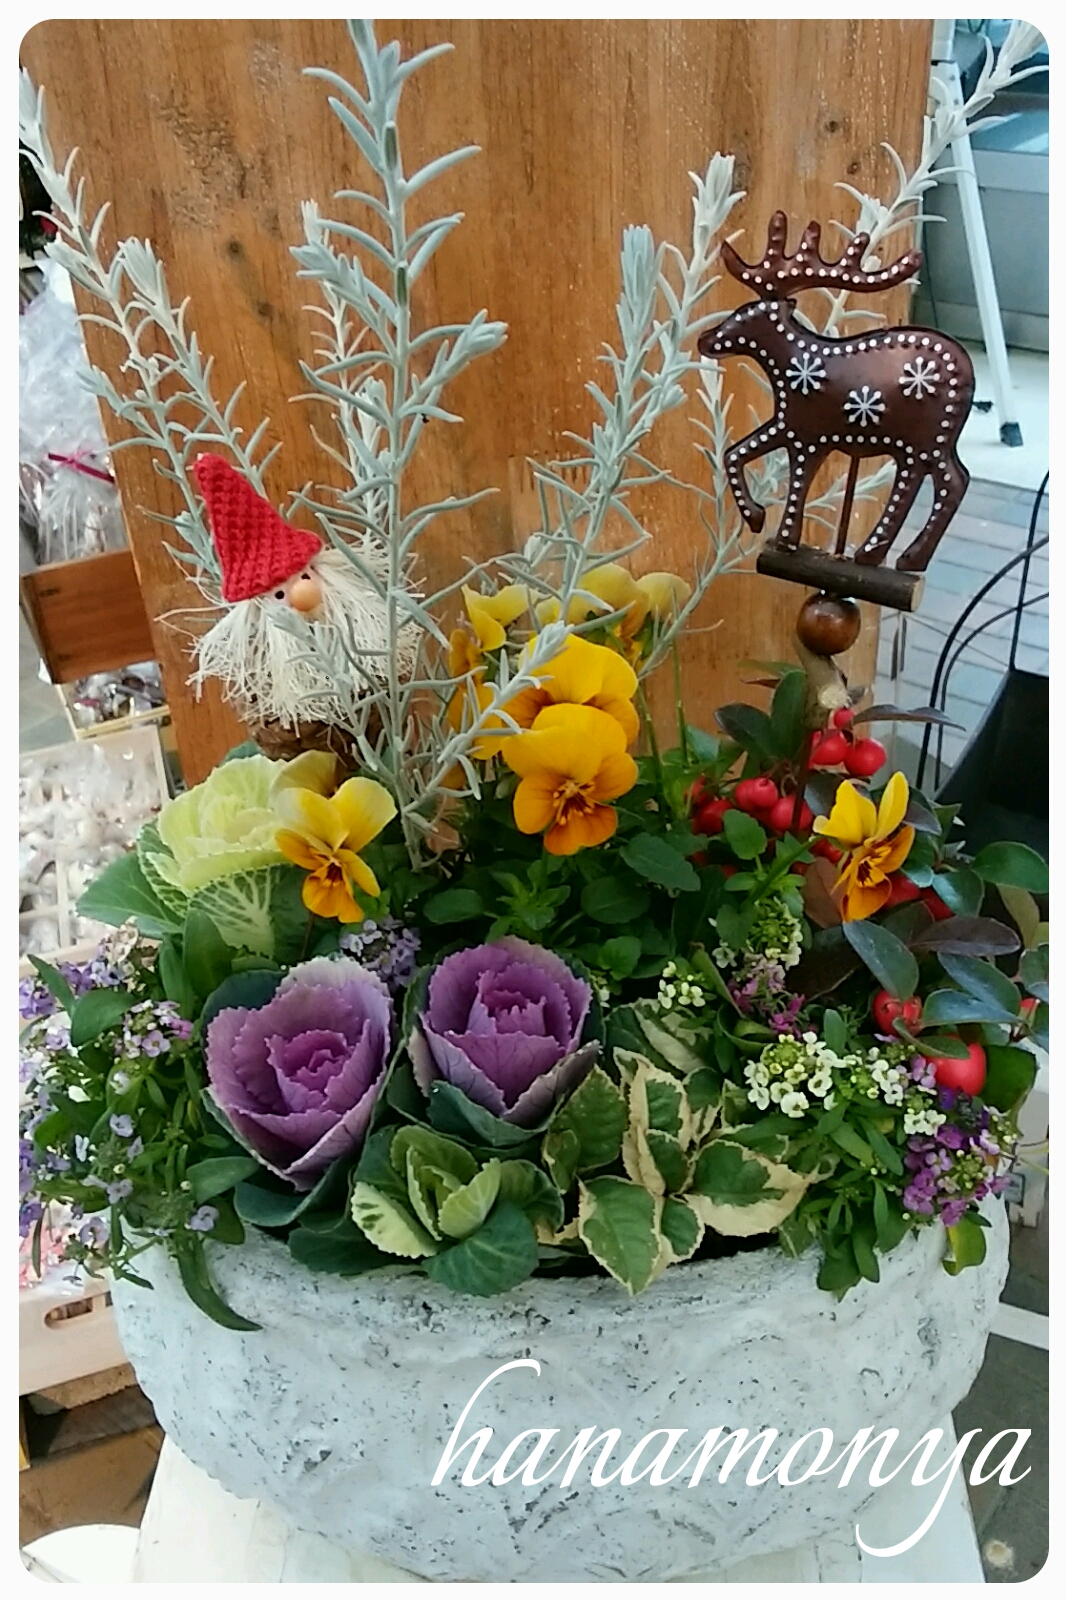 姫路で切り花 鉢花 花苗 観葉植物をご購入なら 姫路市 書写山の麓にあるガーデニングショップの花もん屋 11月寄せ植え講習